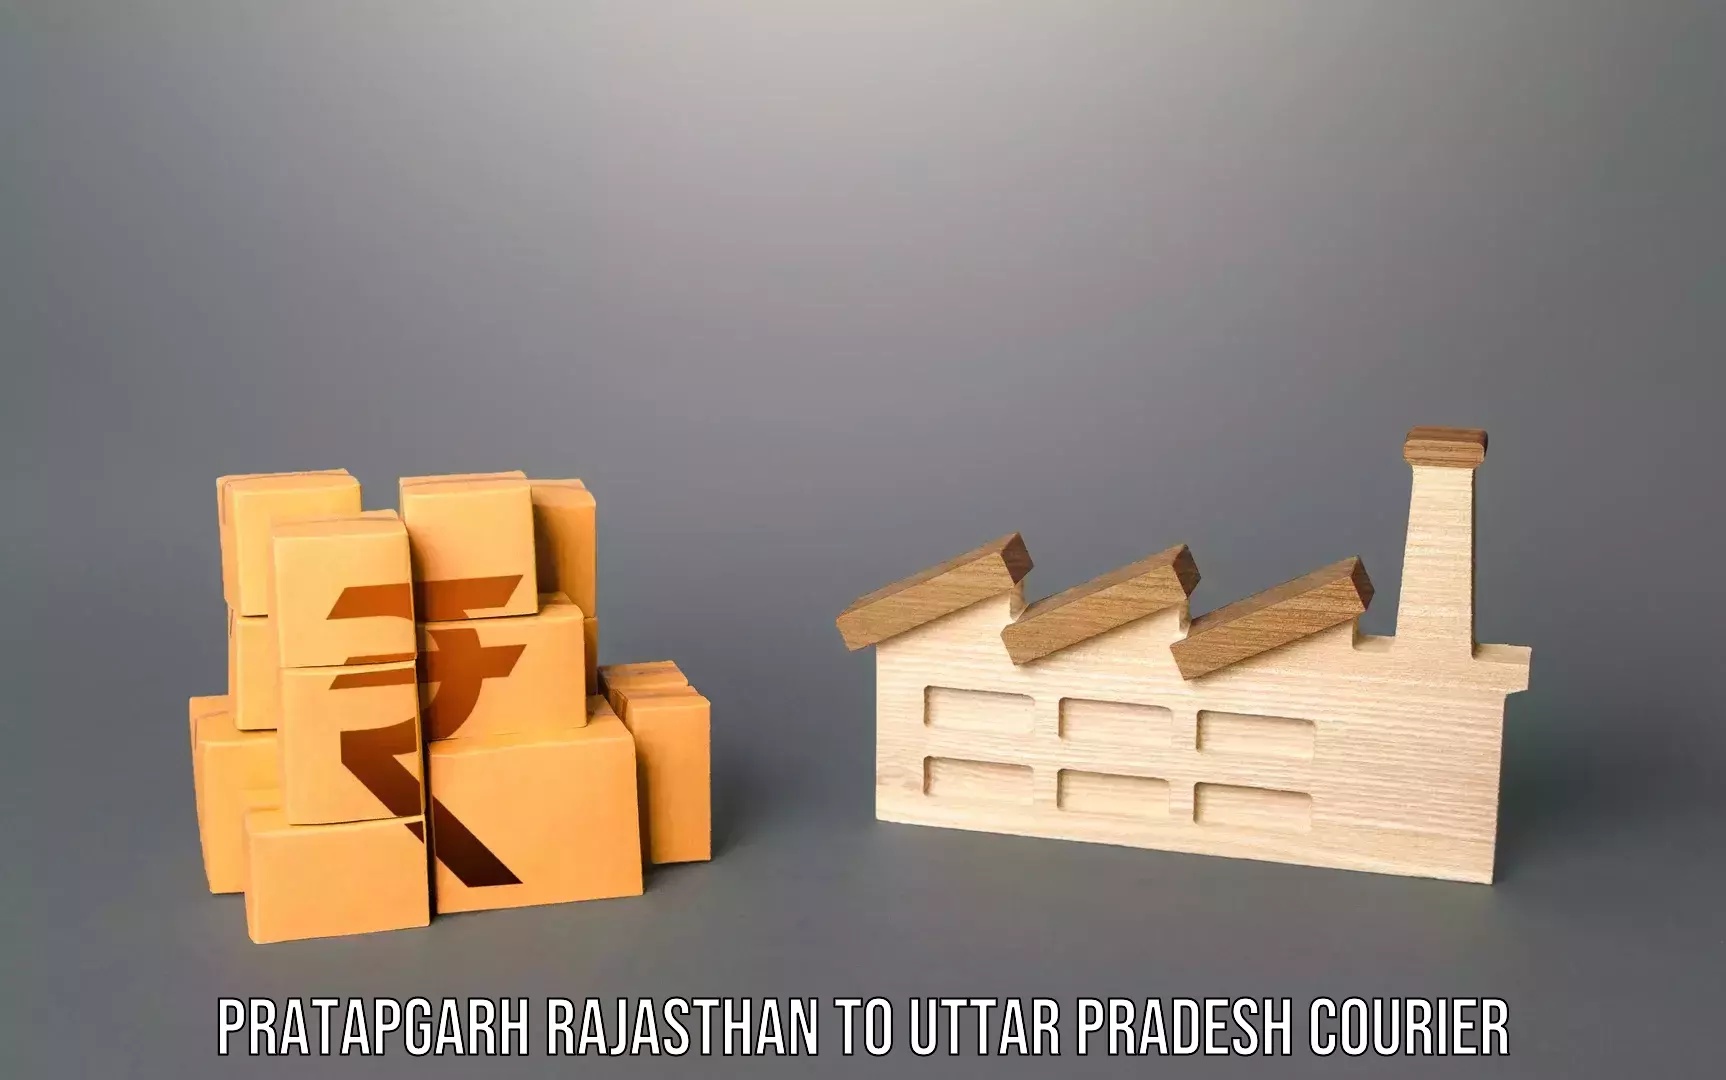 Luggage transport consulting Pratapgarh Rajasthan to Manda